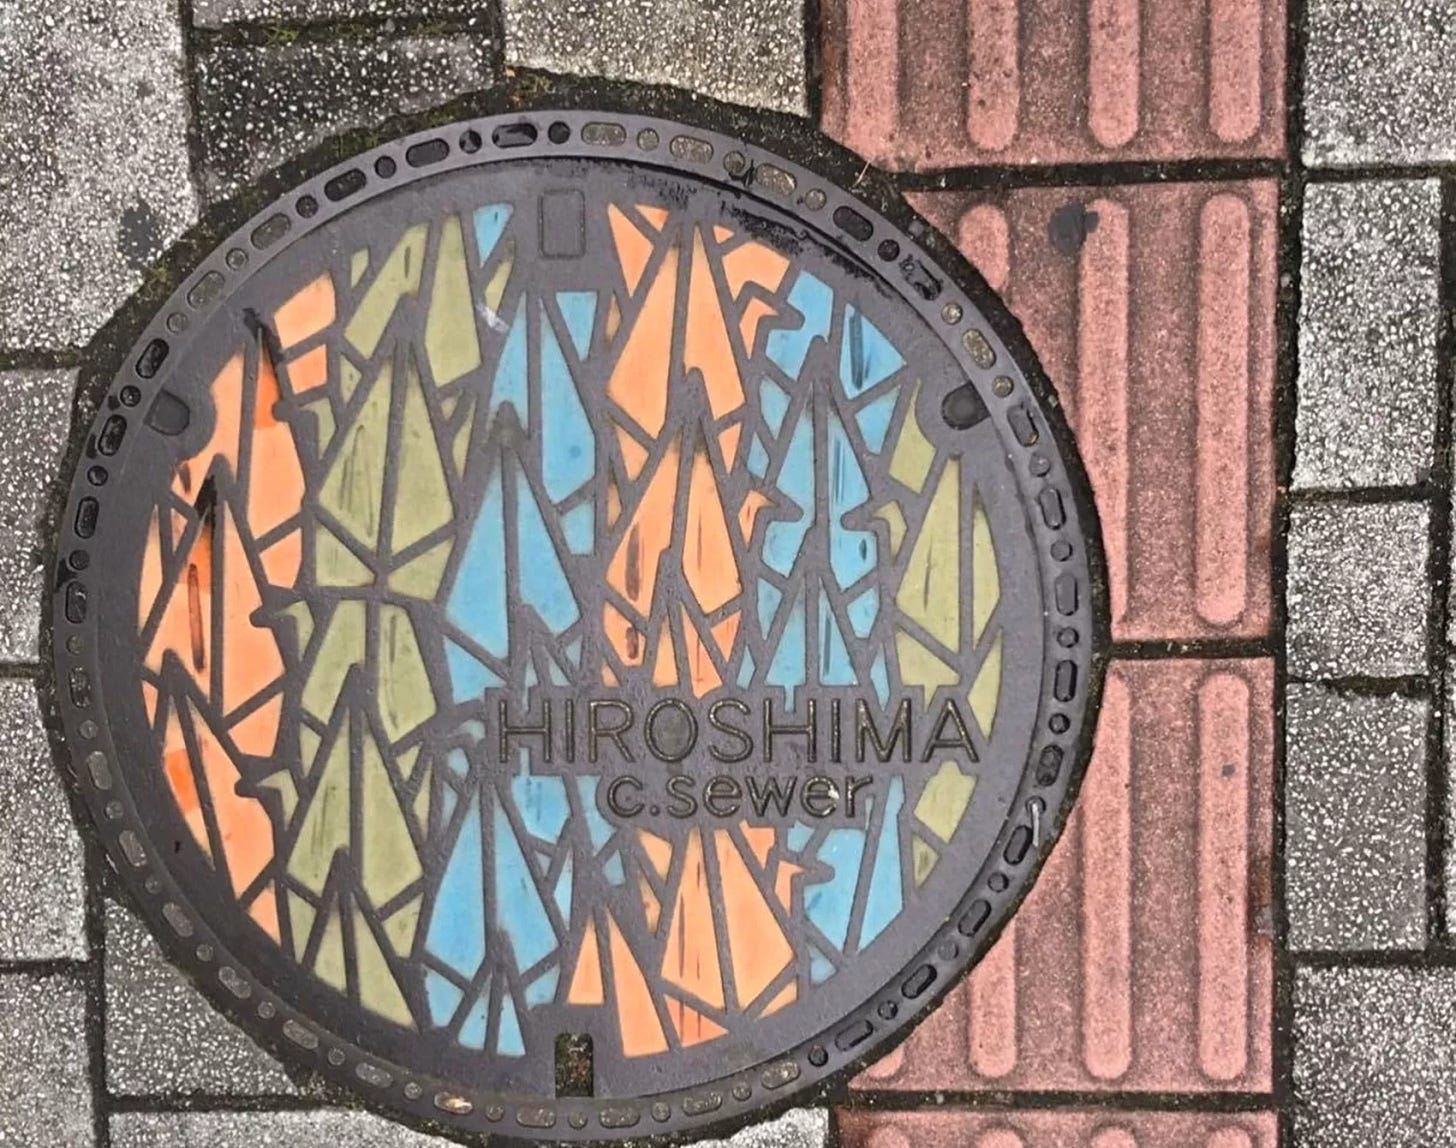 A decorative manhole cover in Hiroshima featuring an origami crane design.